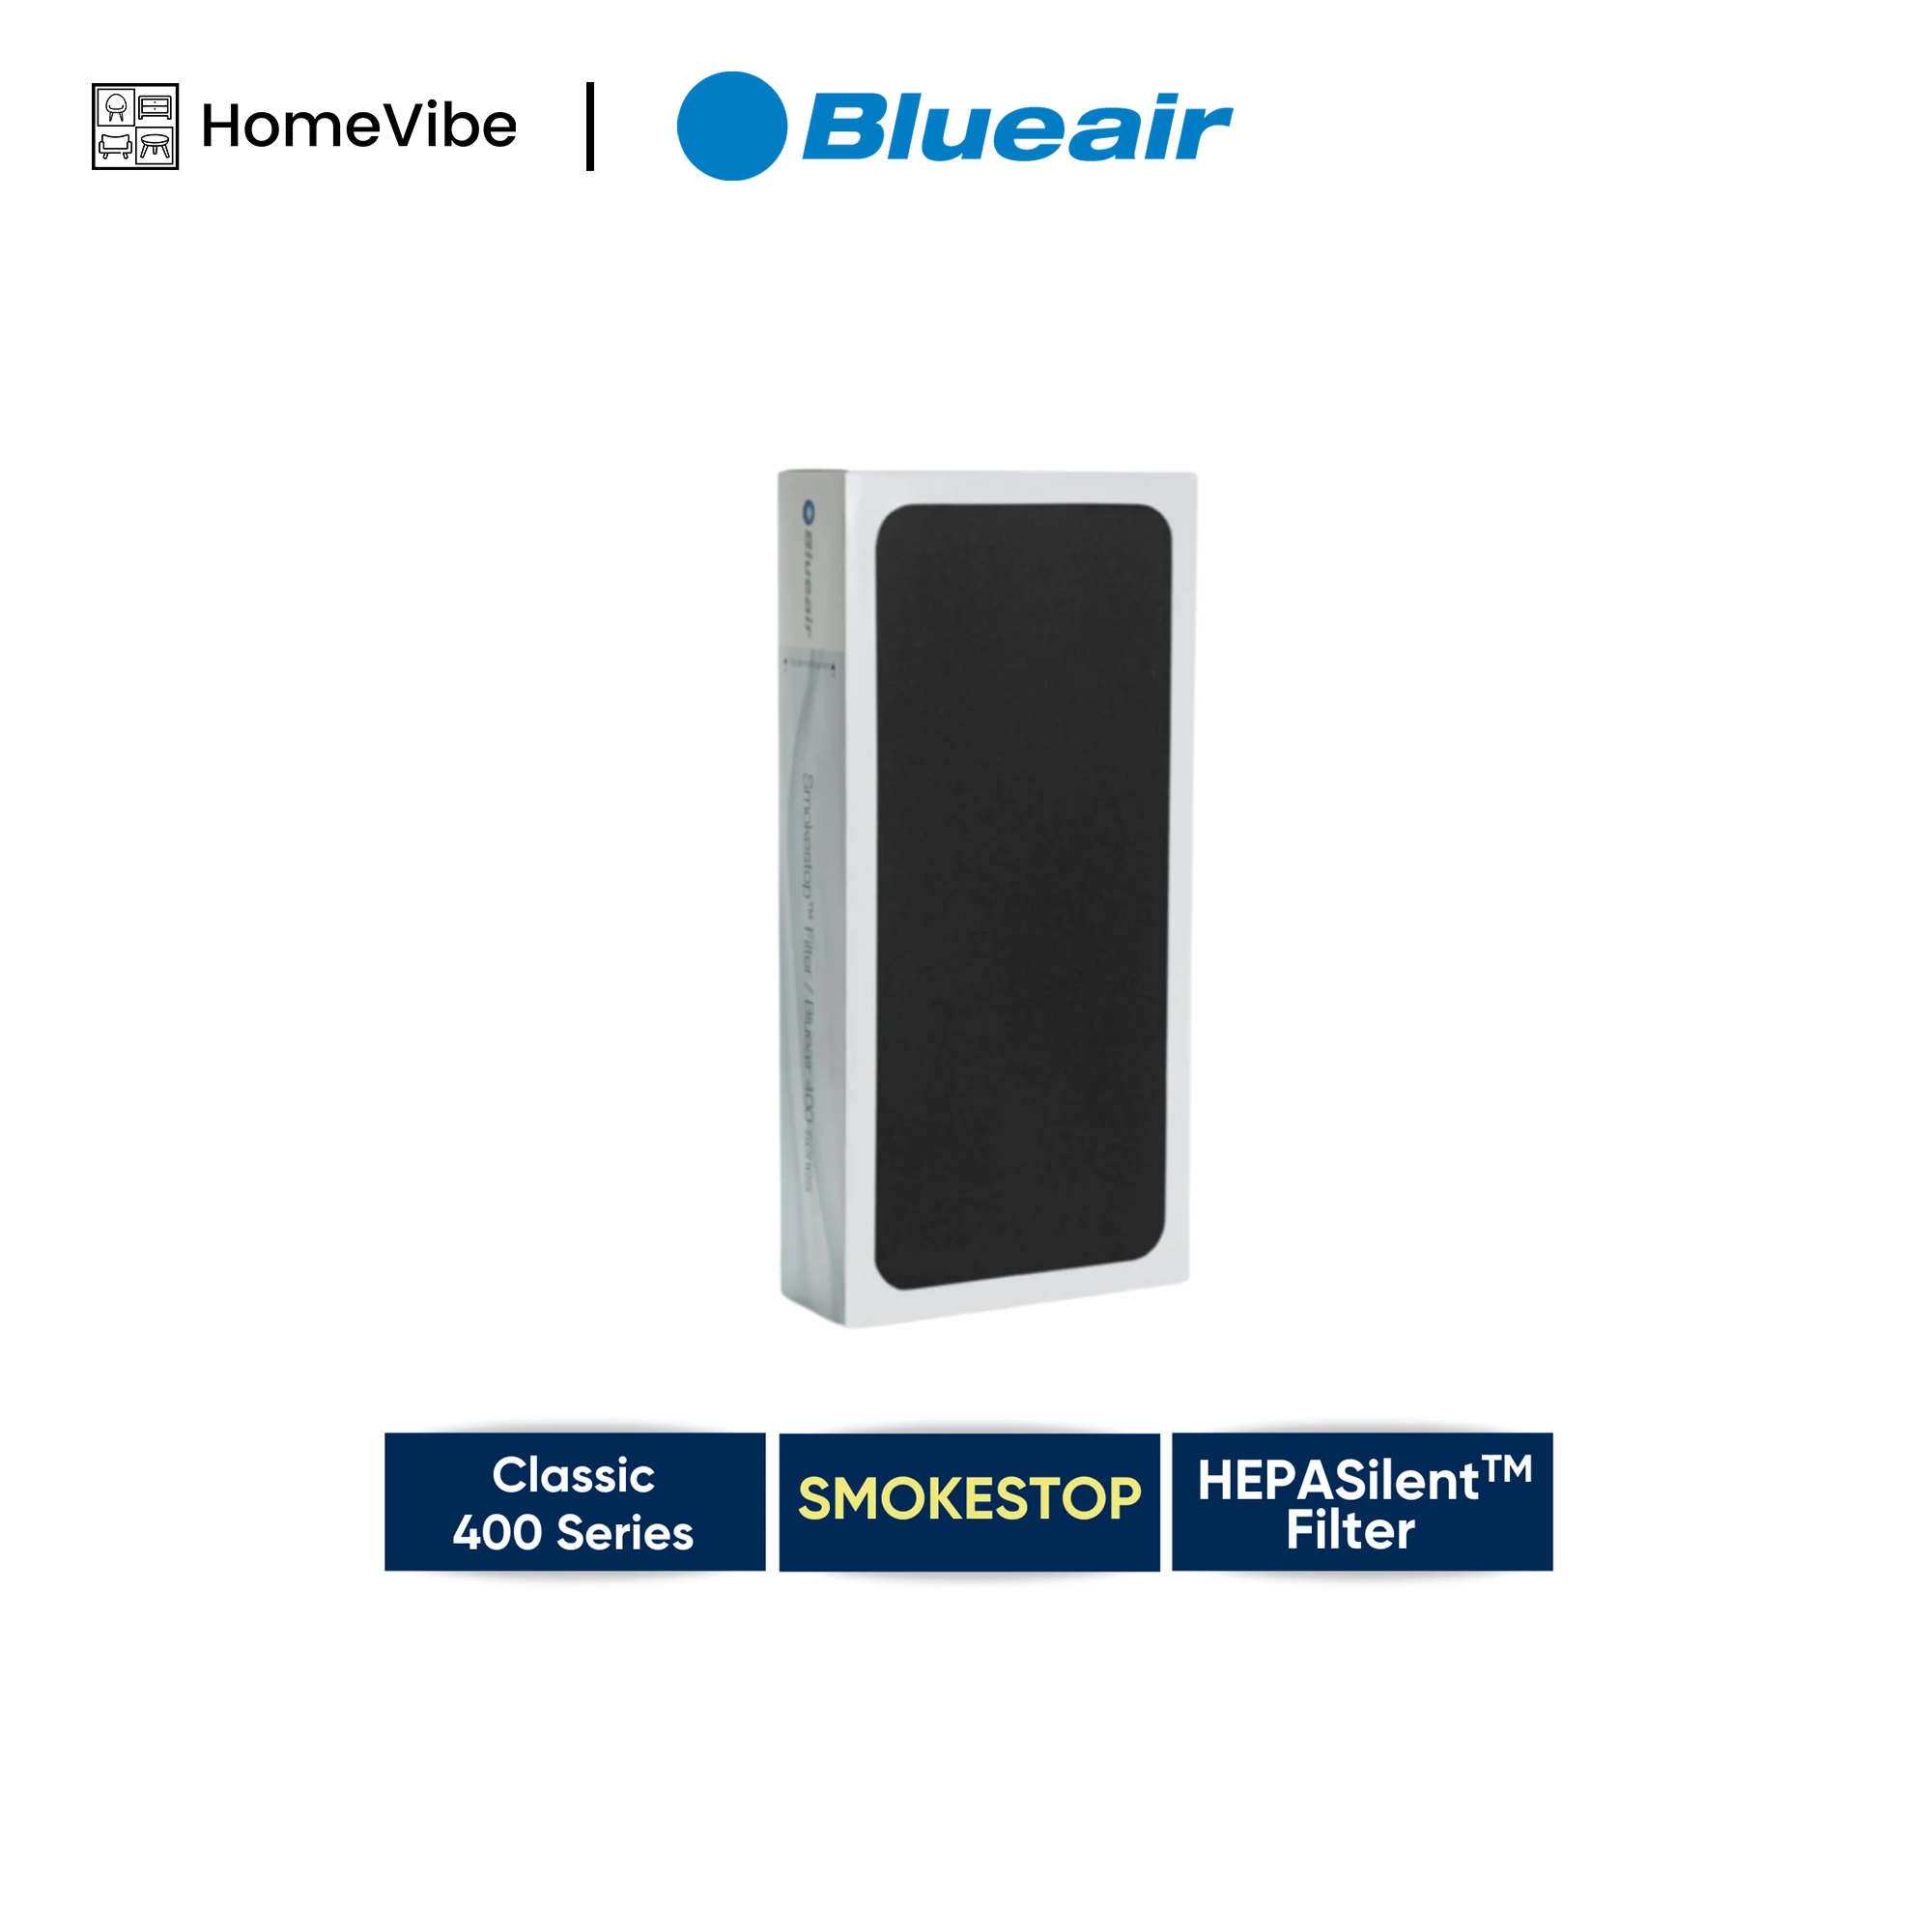 Blueair 400 Smokestop Filter